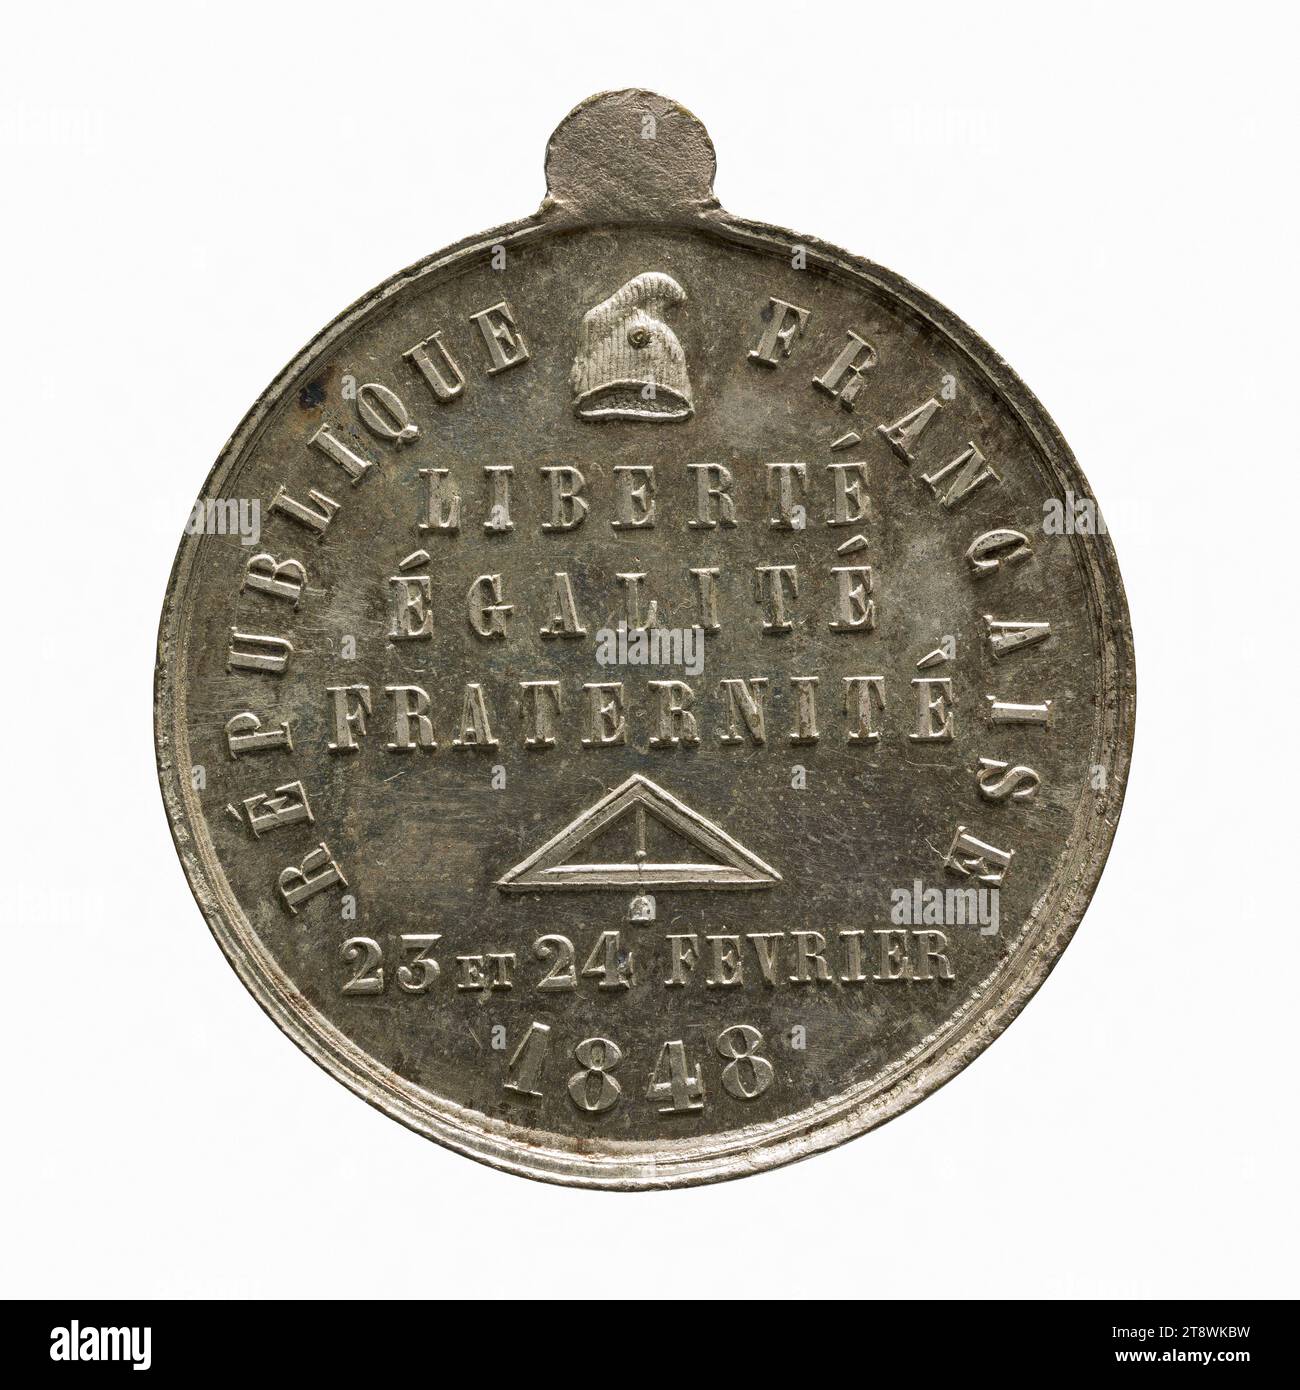 Tage des 23. Und 24. Februar 1848, Richard, Engraver in Medaillen, Array, Numismatik, Medaille, Paris, Durchmesser: 3,5 cm, Gewicht (Typenabmessung): 19,09 g Stockfoto